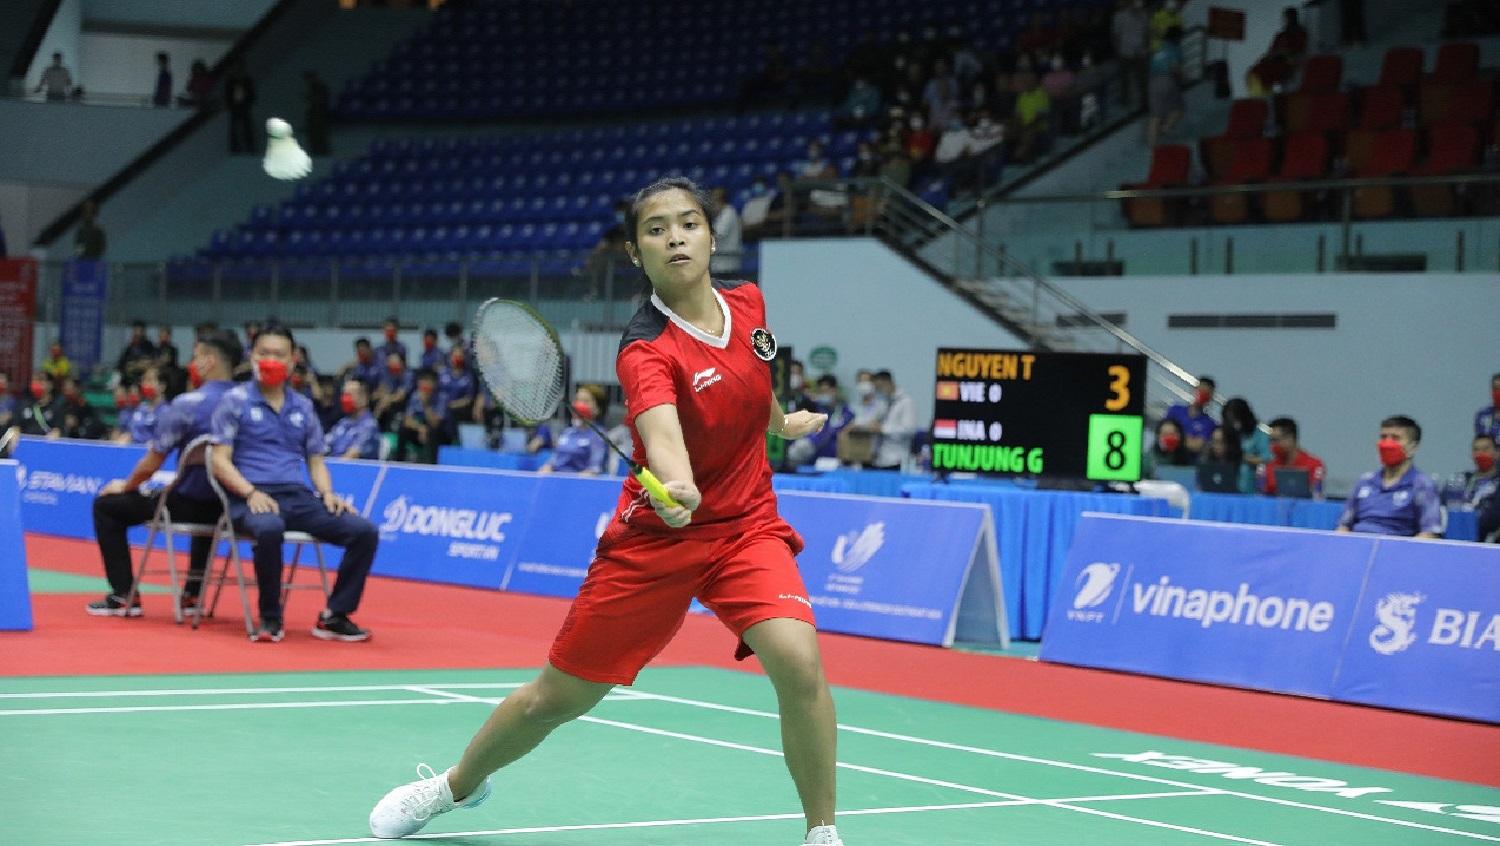 Indosport - Sukses menaklukkan Vietnam dan melaju ke final bulutangkis beregu putri SEA Games 2021, Gregoria Mariska Tunjung tak lepas dari evaluasi.